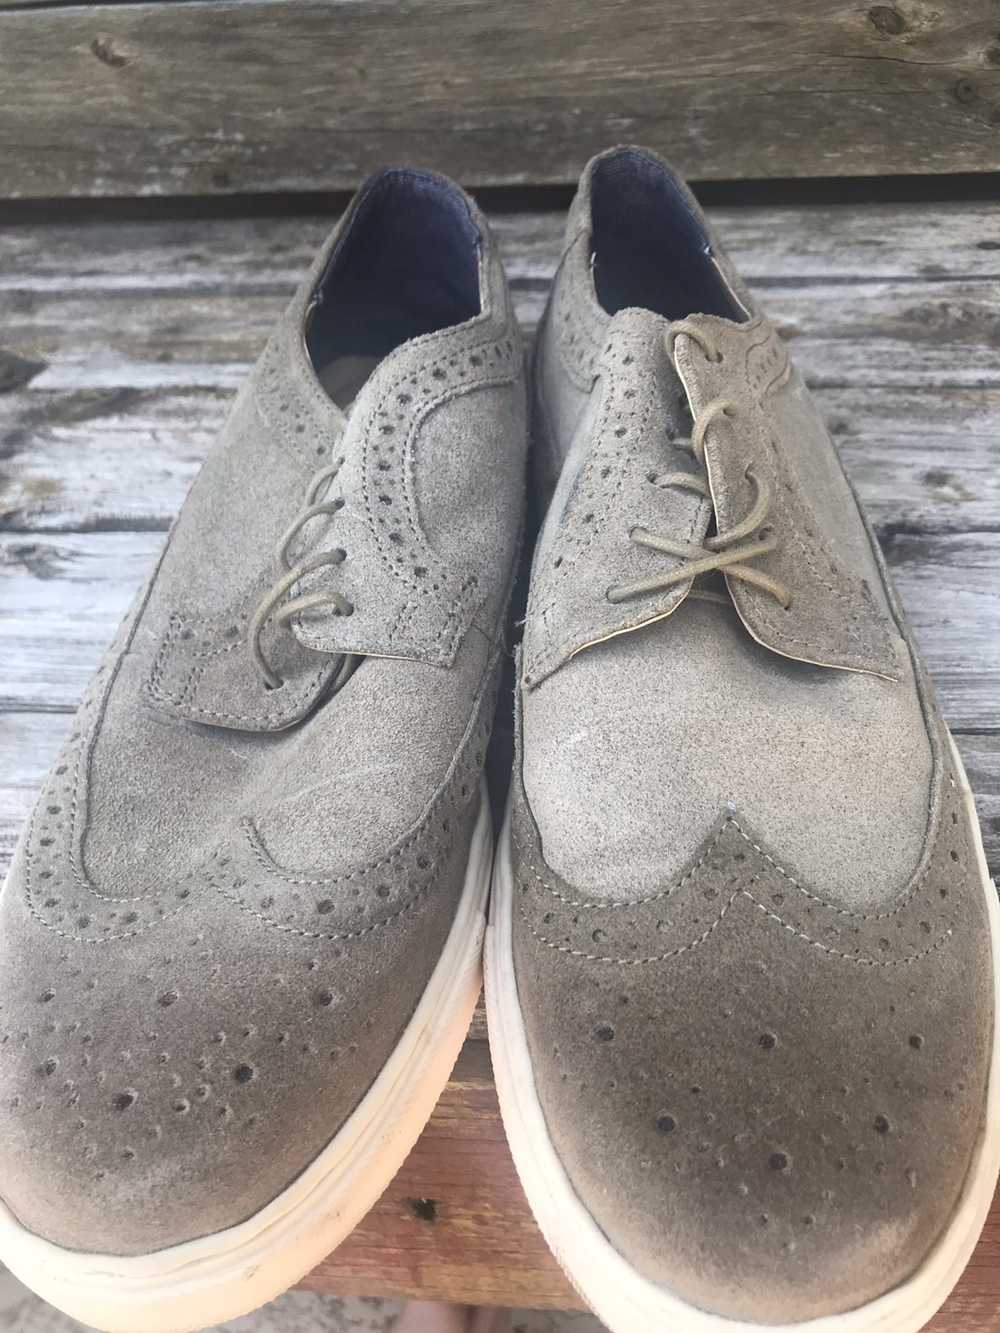 Crevo Crevo memory foam shoes gray suede grey - image 2